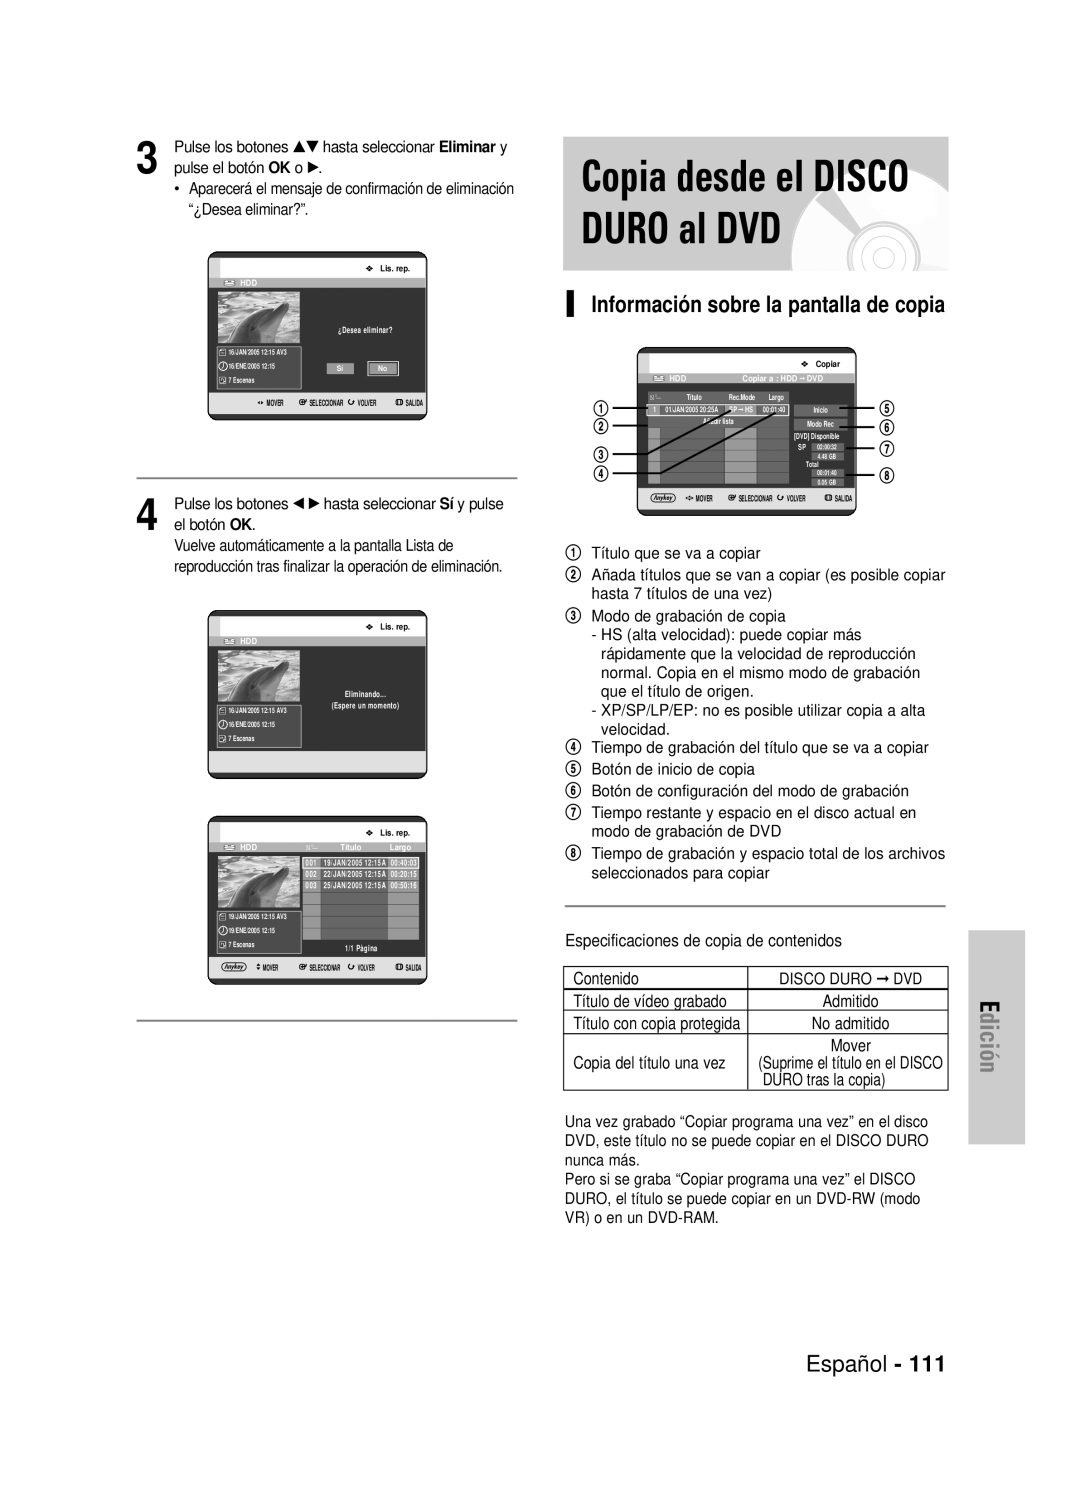 Samsung DVD-HR725/XEH Copia desde el DISCO DURO al DVD, Información sobre la pantalla de copia, Edición, Español, Admitido 